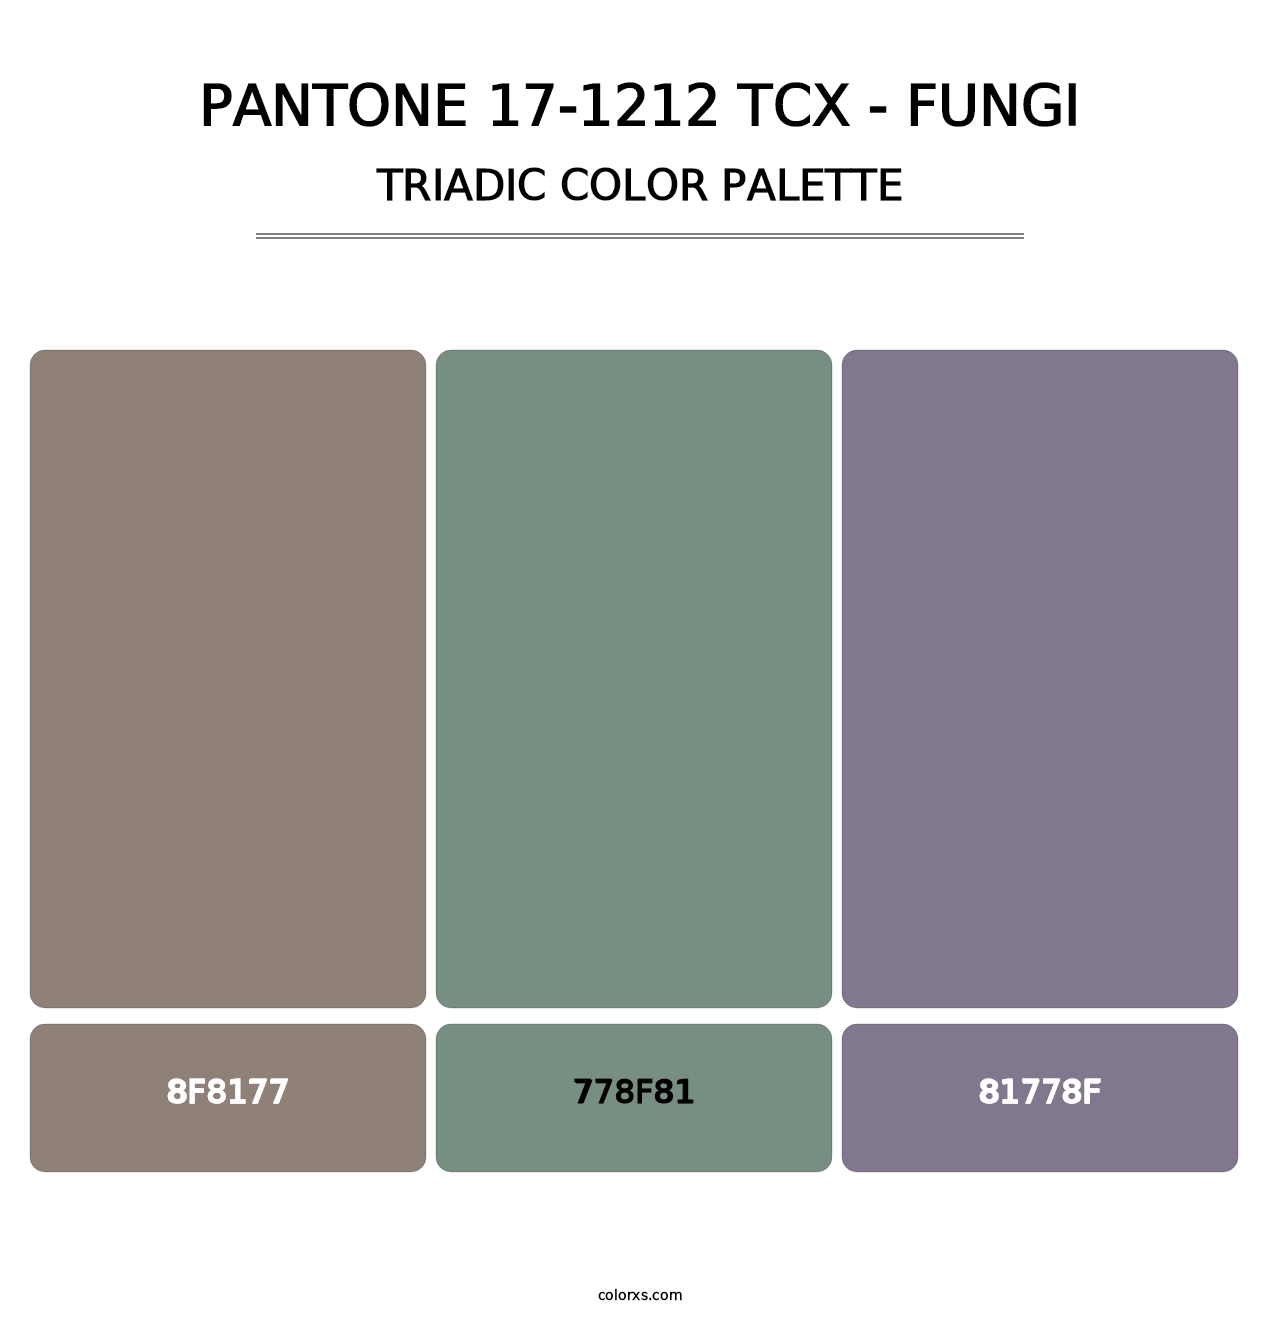 PANTONE 17-1212 TCX - Fungi - Triadic Color Palette